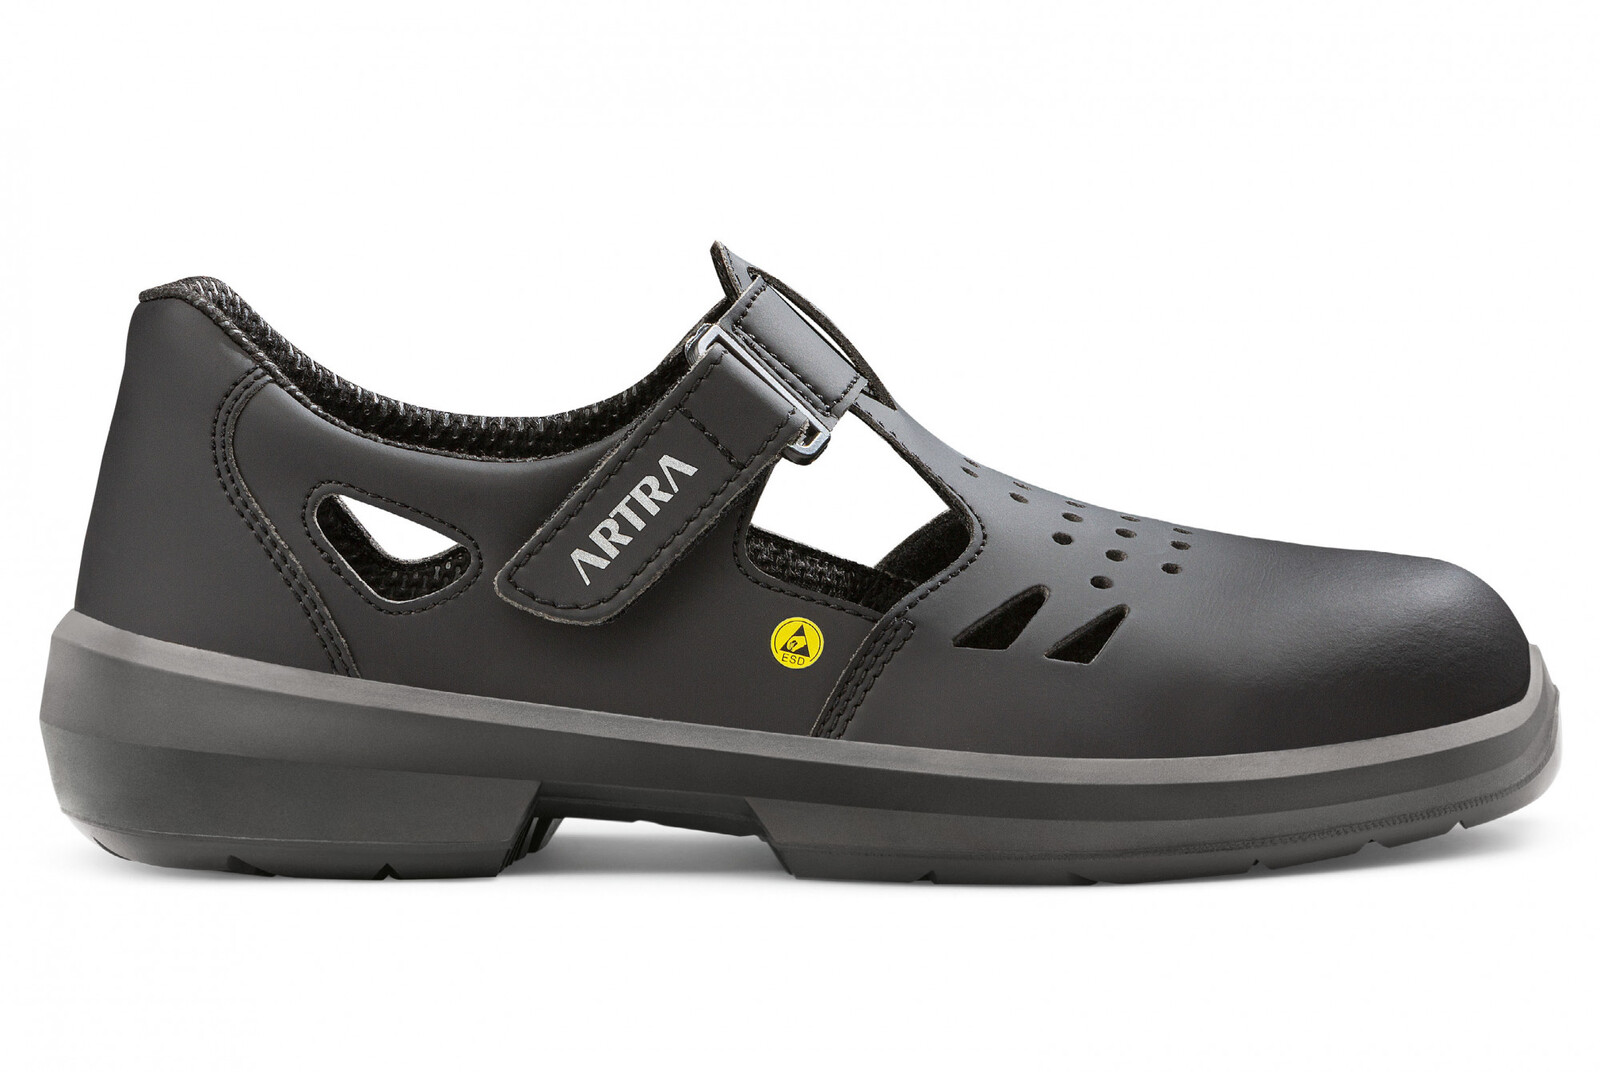 Bezpečnostné sandále Artra Armen 9008 6760 S1 SRC ESD MF - veľkosť: 44, farba: čierna